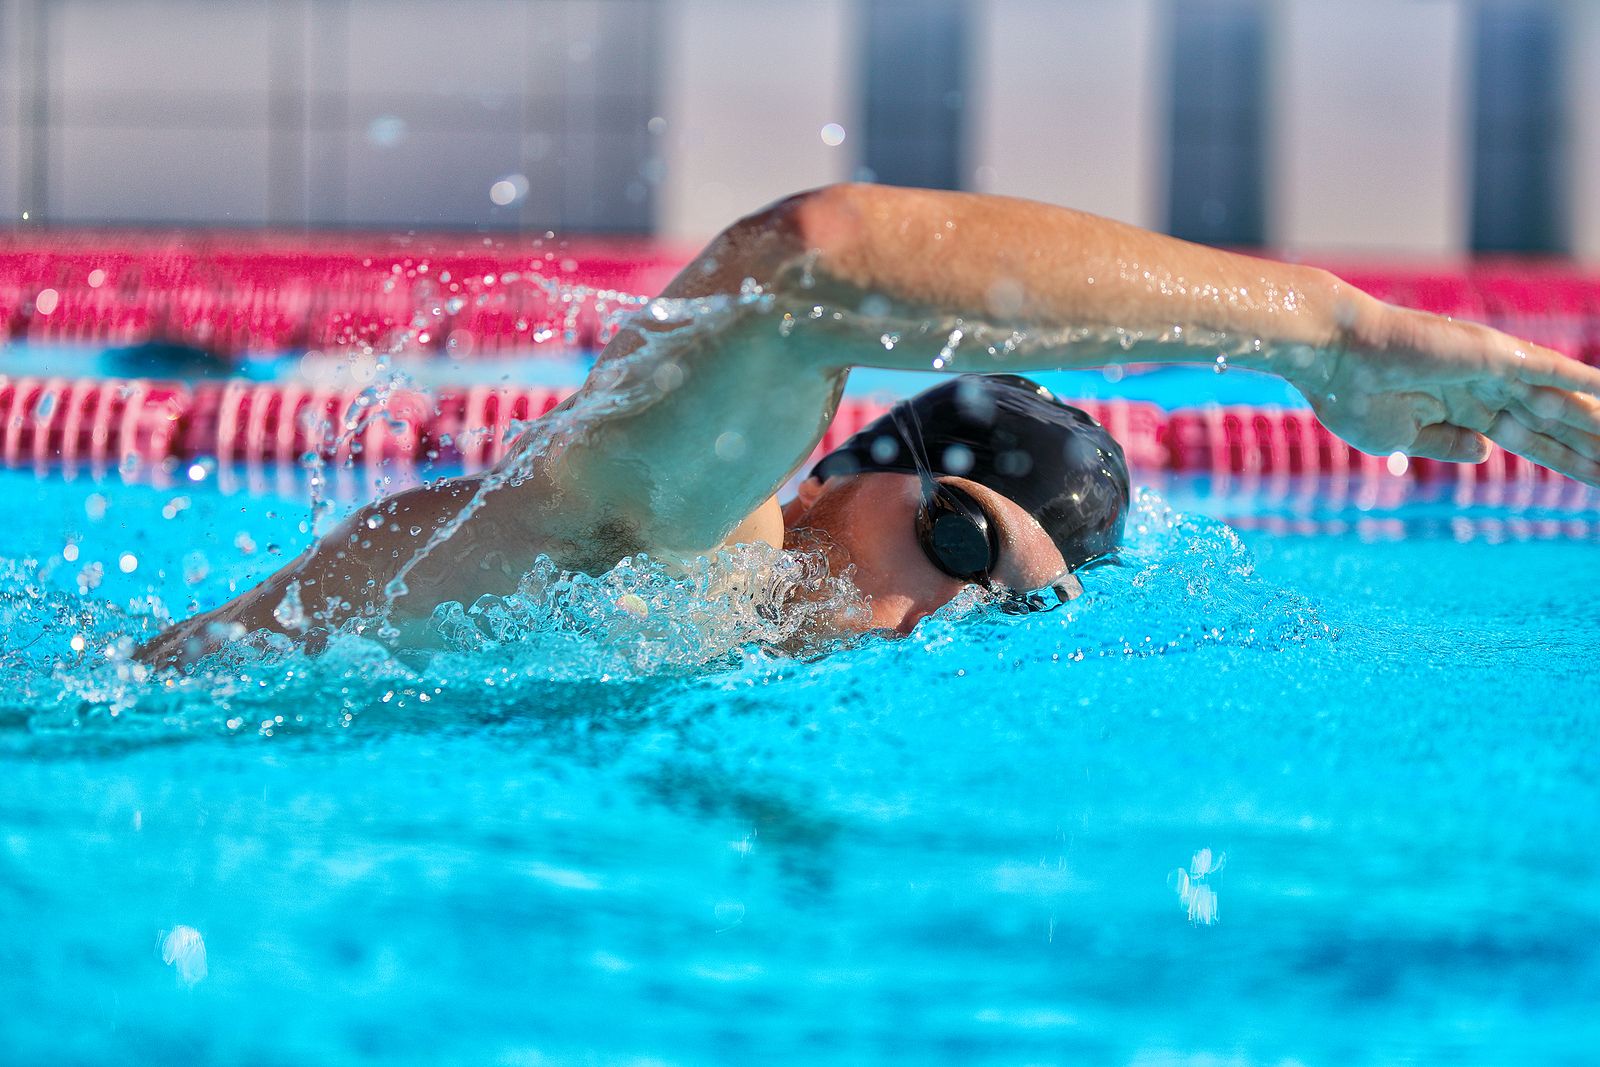 Realiza estos sencillos ejercicios y aumentarás tu rendimiento al nadar (Foto: bigstock)